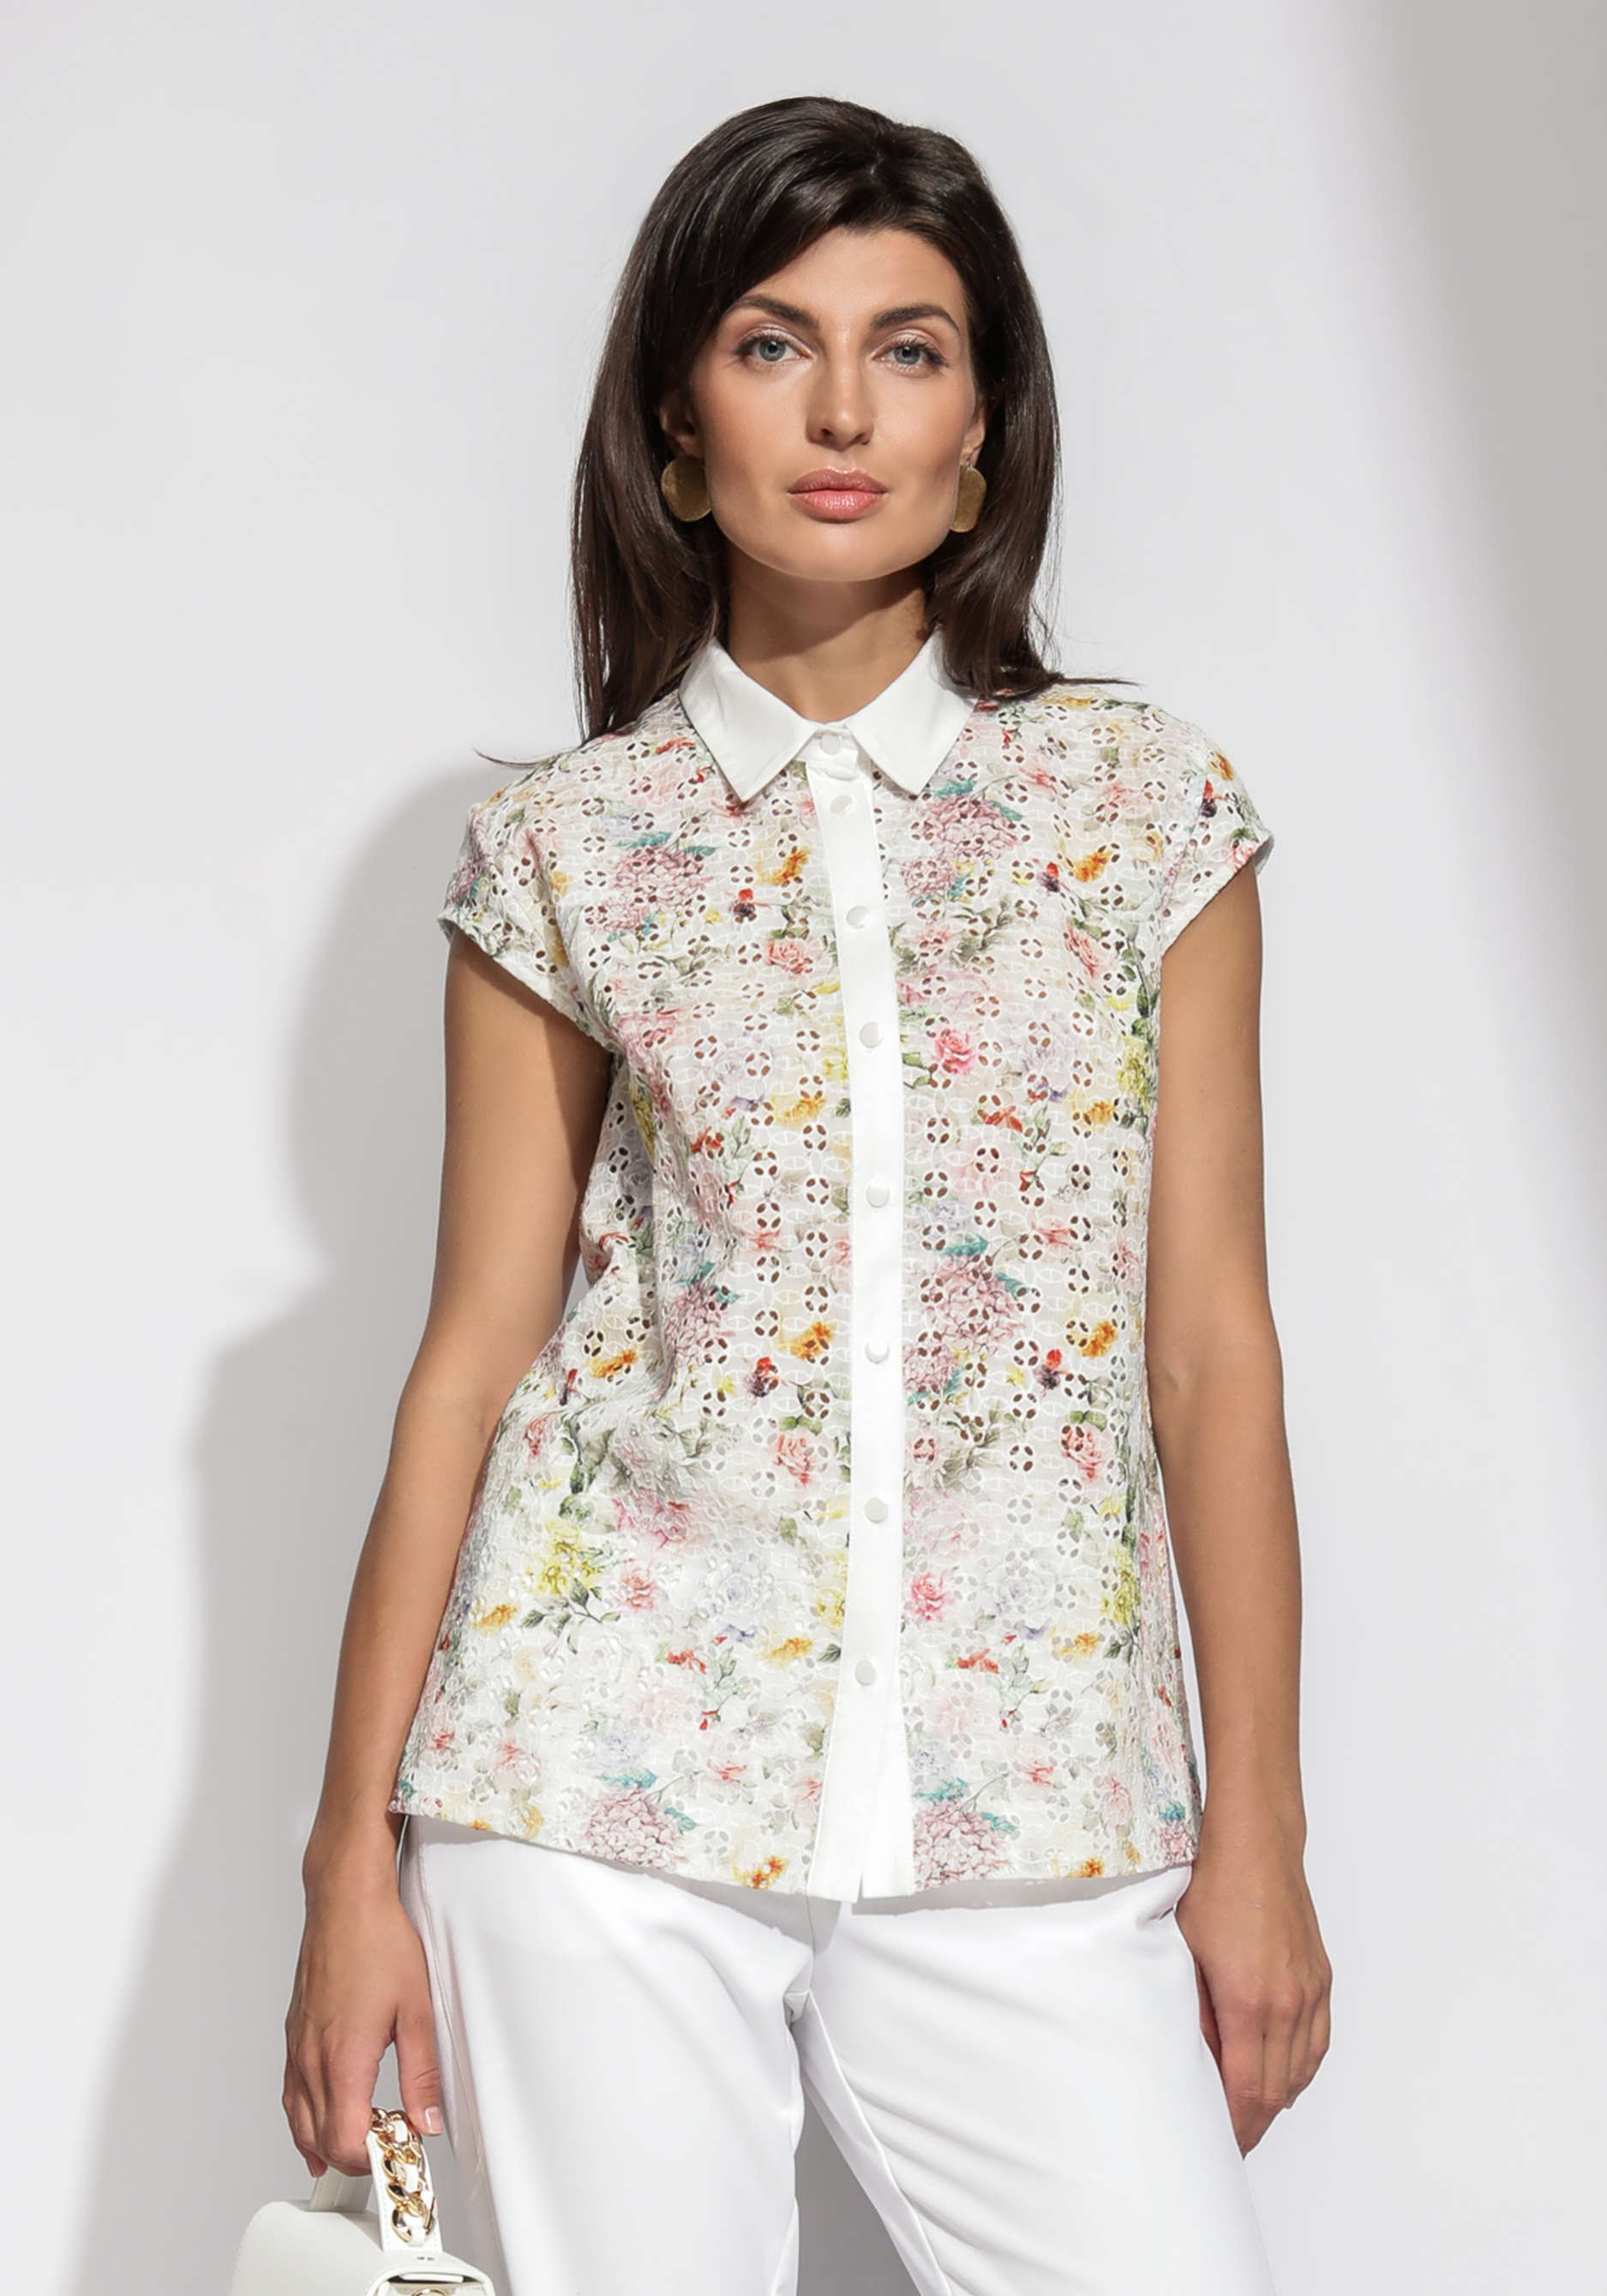 Блузка из шитья с цветочным принтом блузка софия